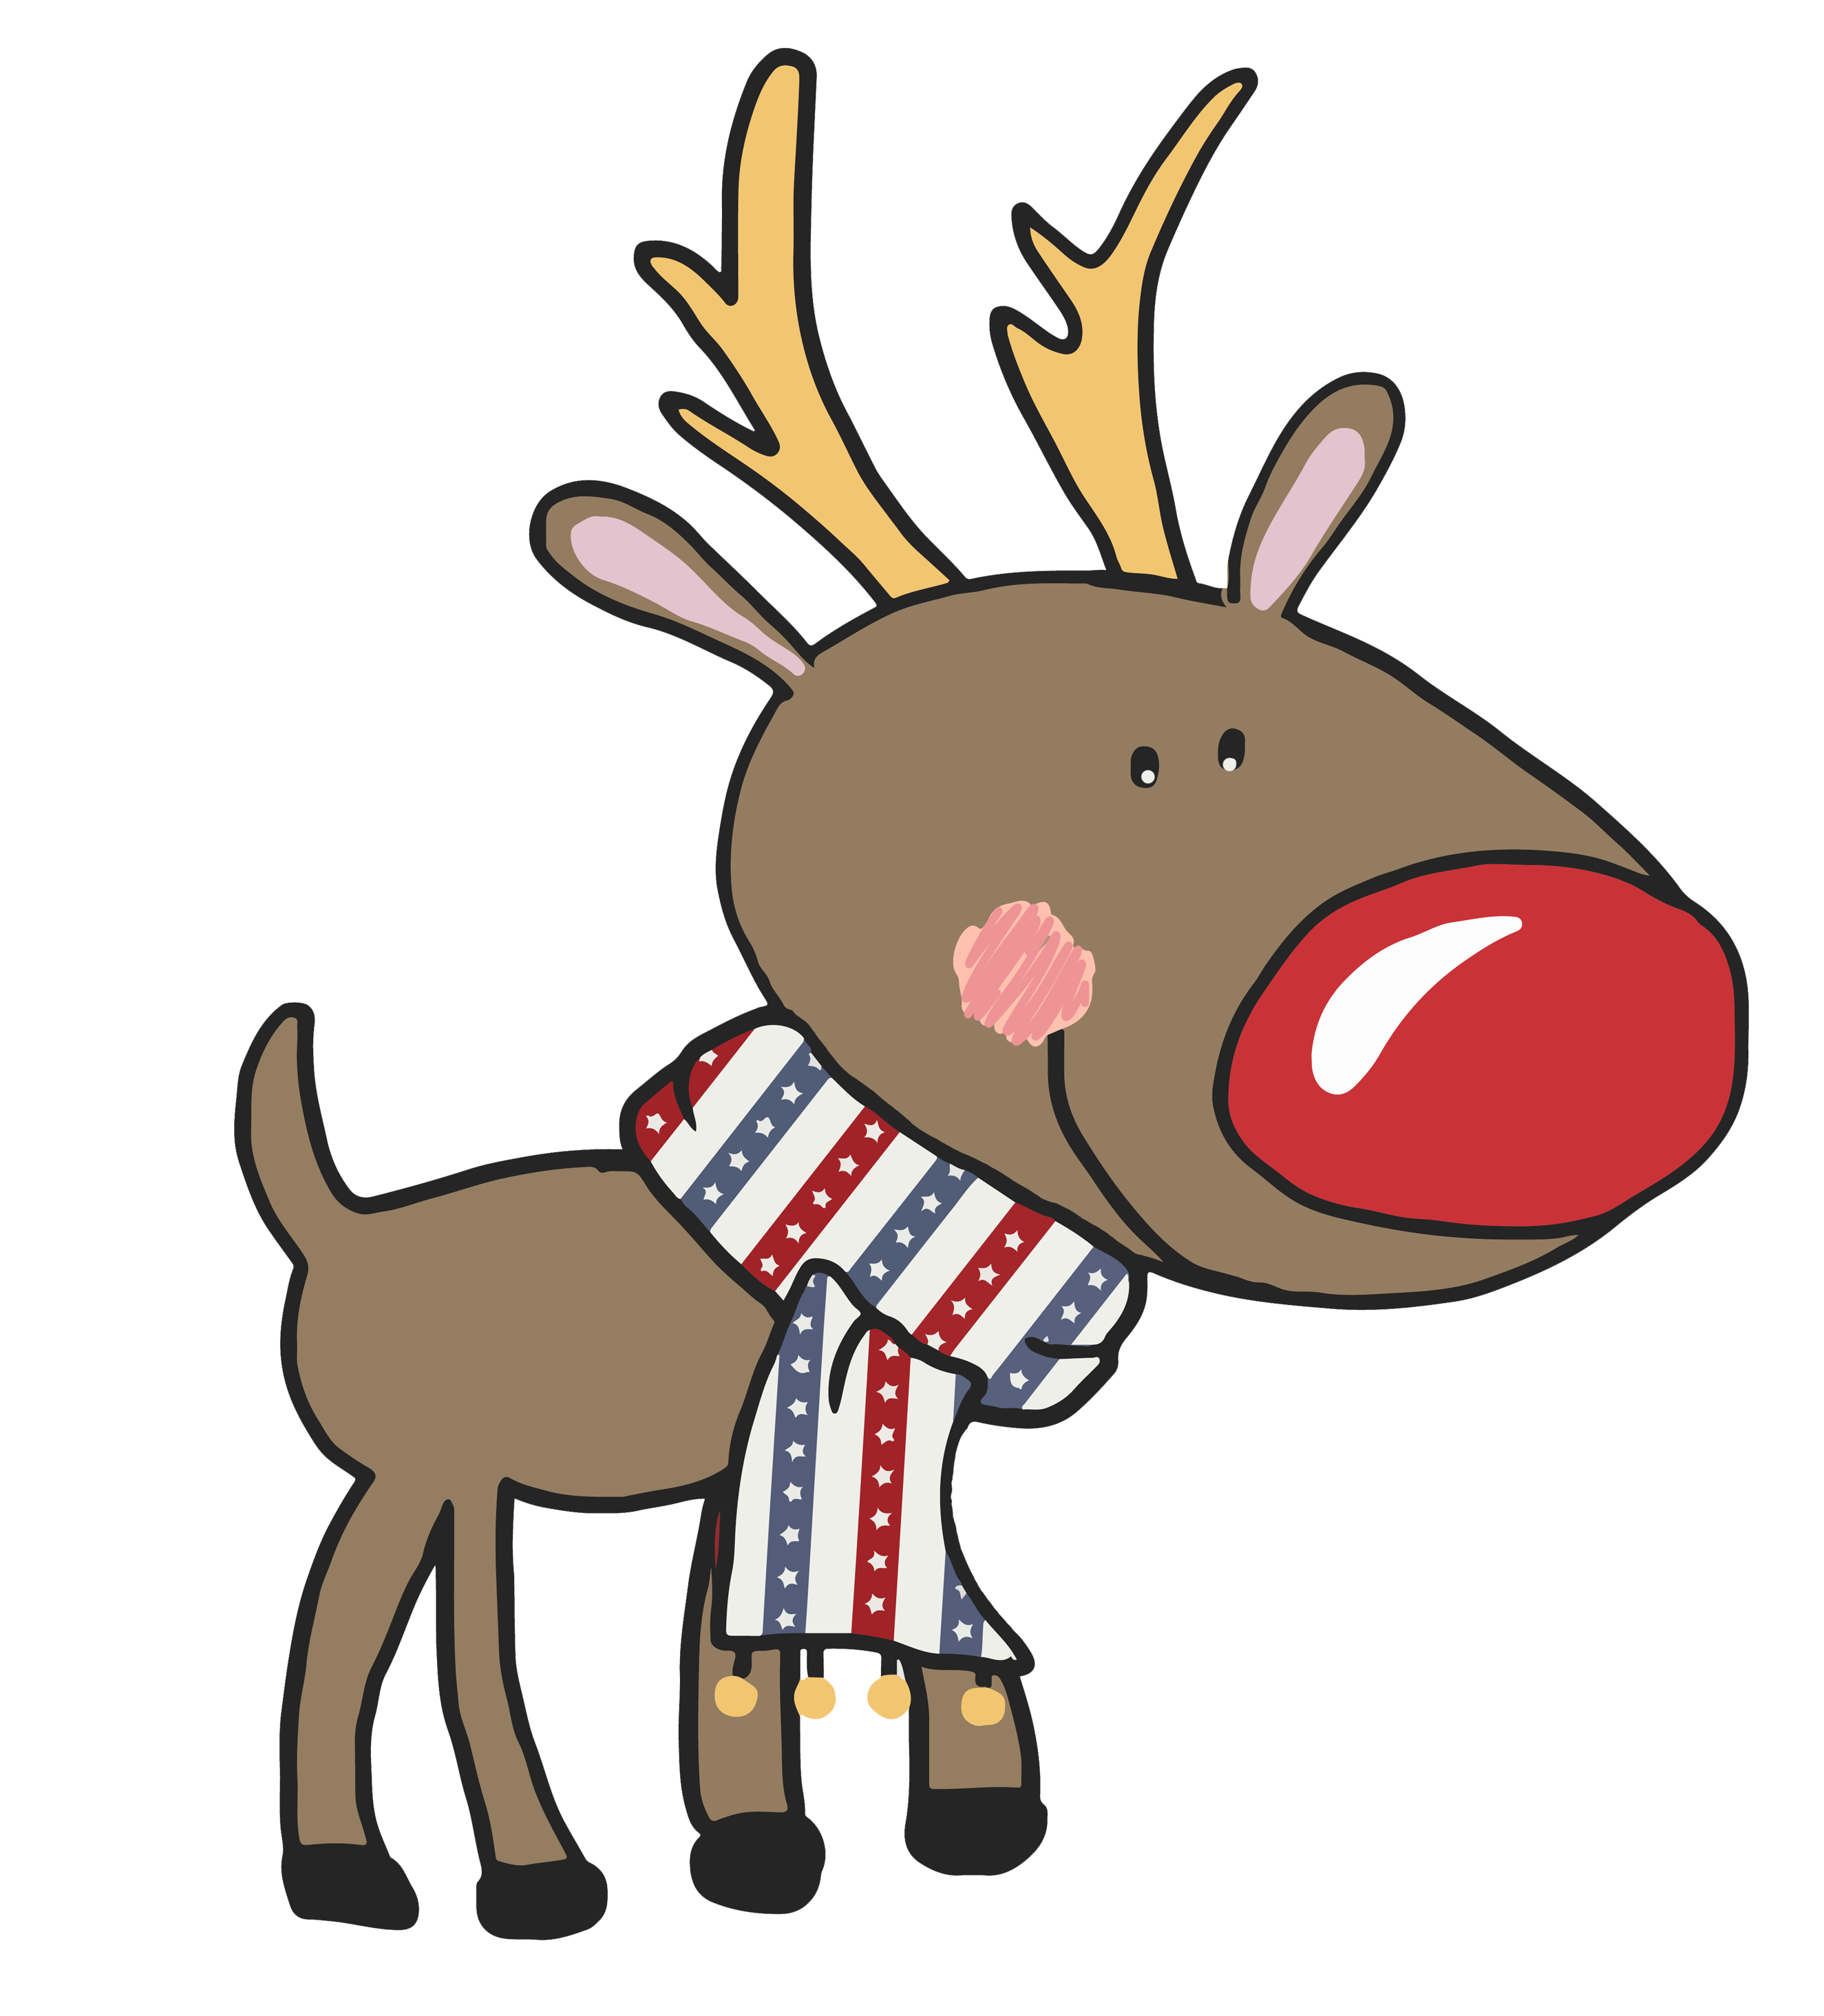 Christmas deer